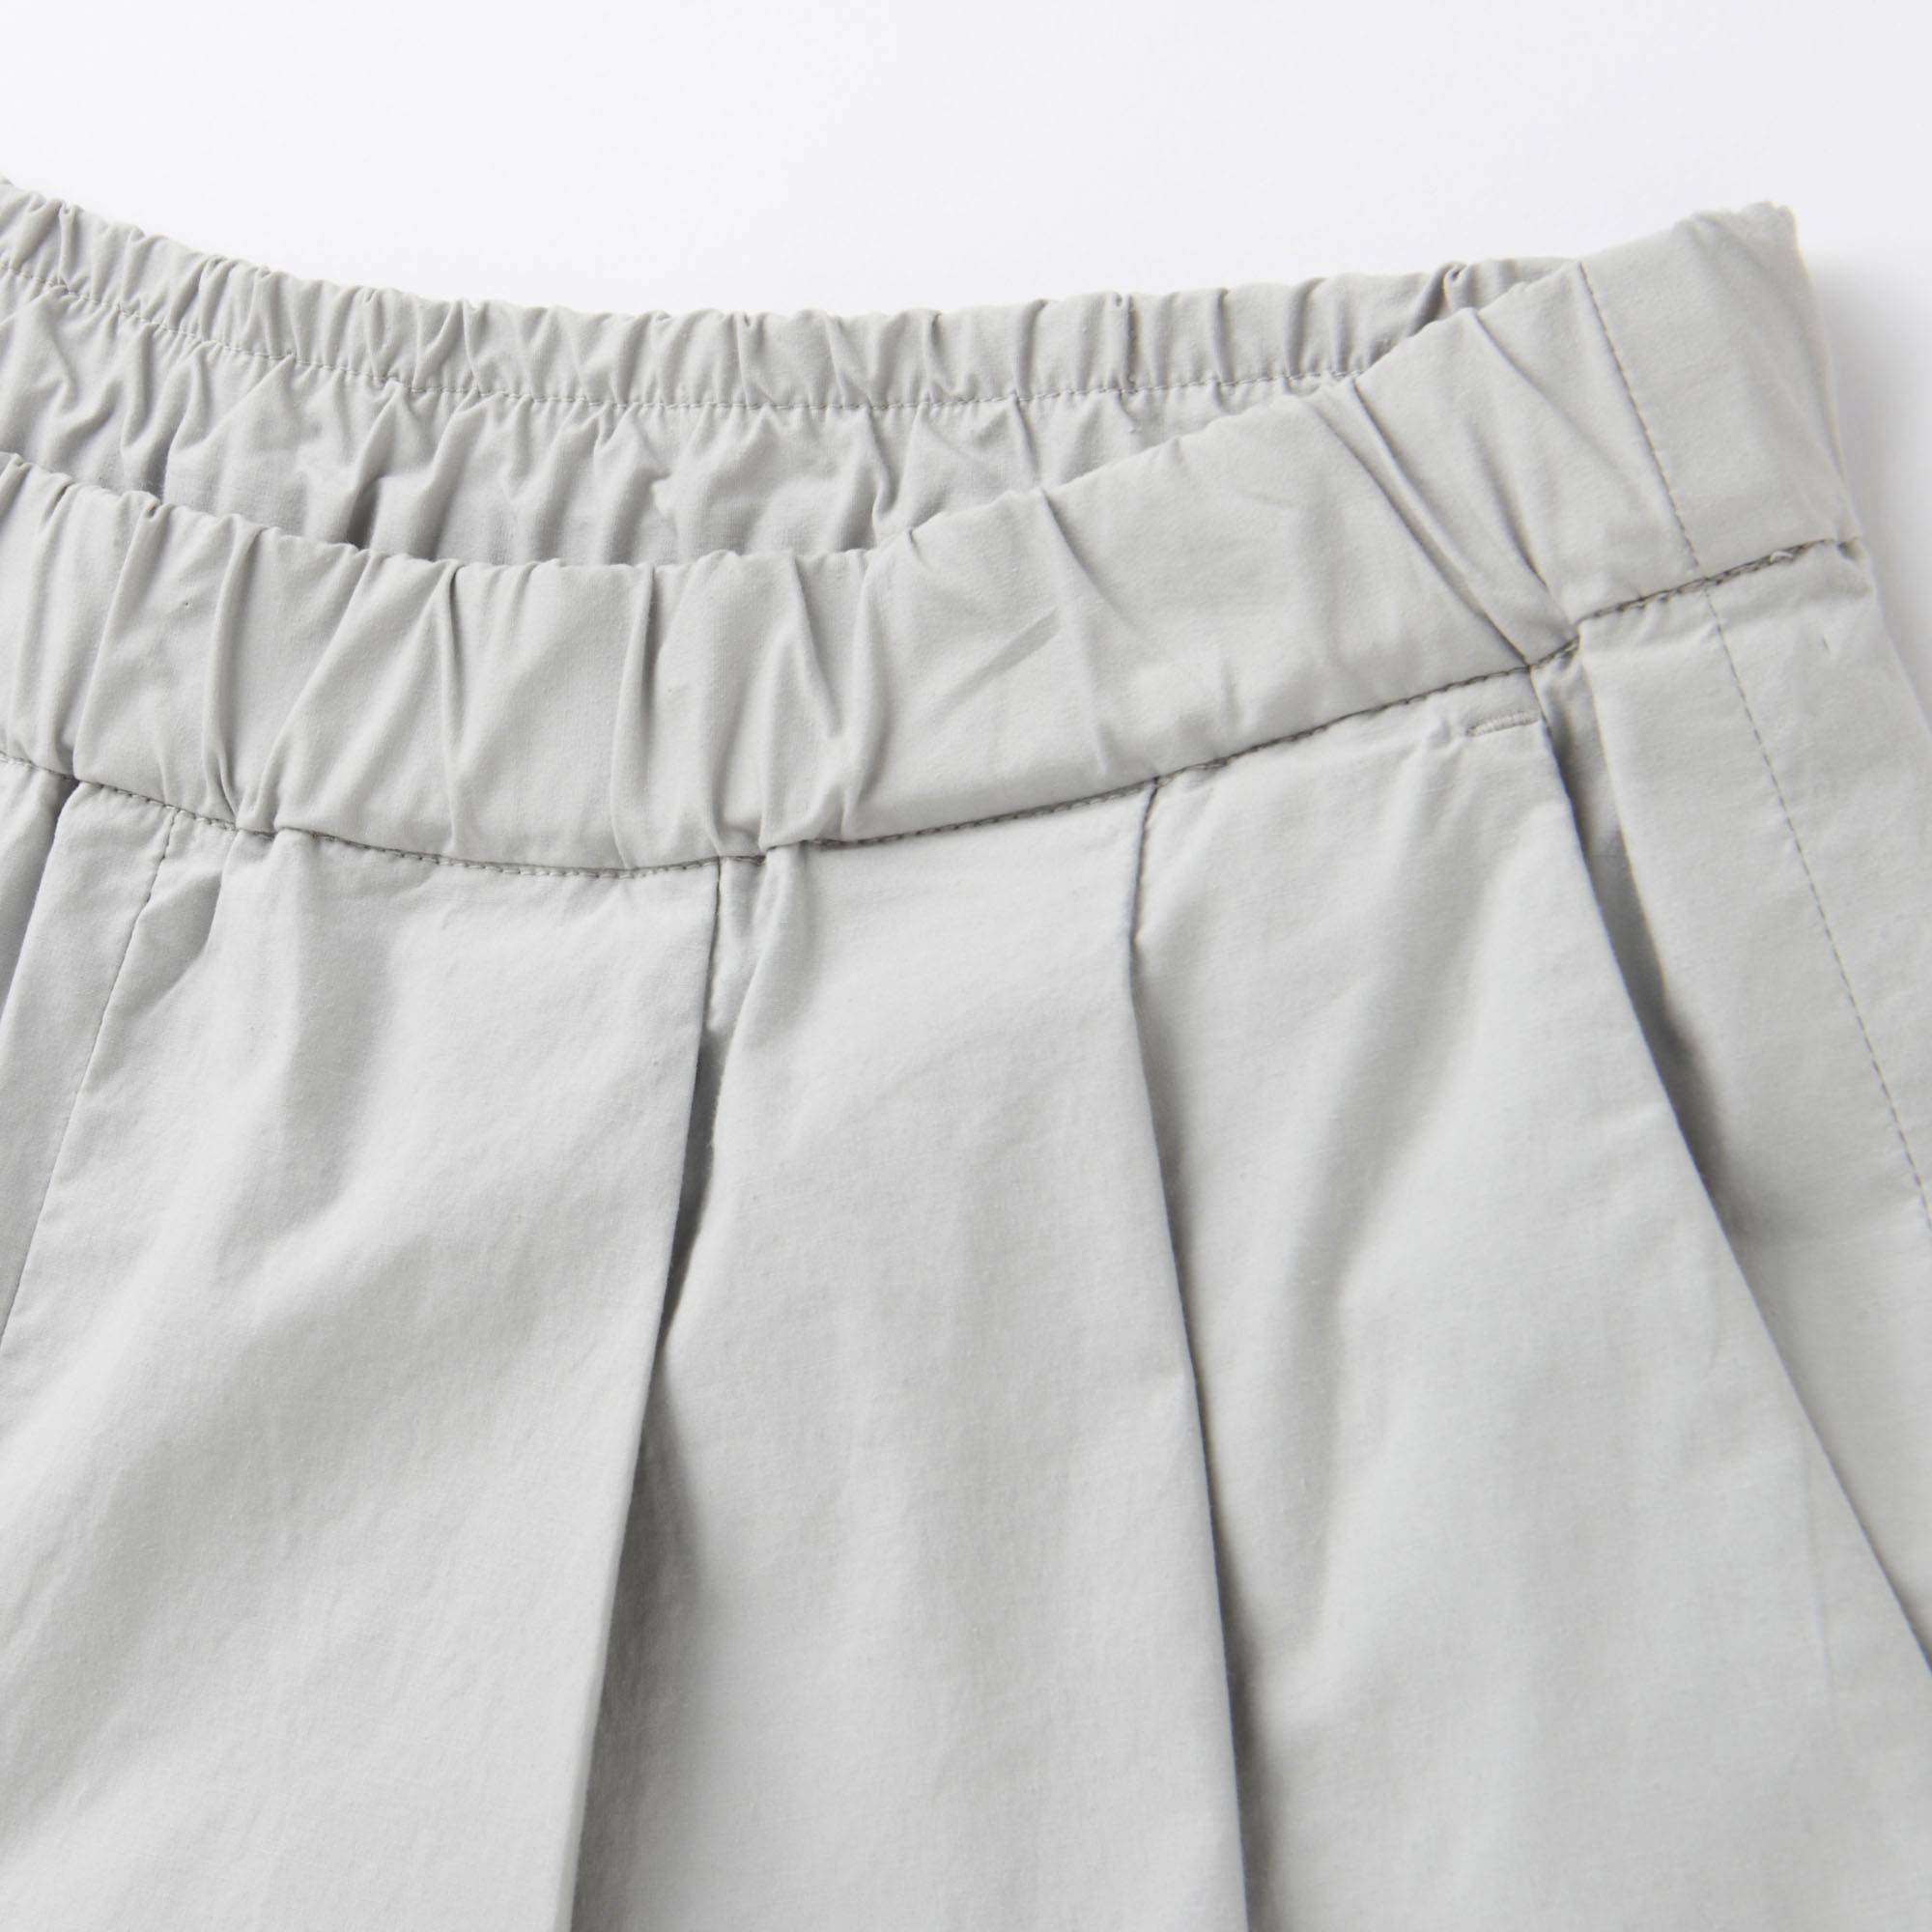 Full Length Gaucho Pants - Pant Row